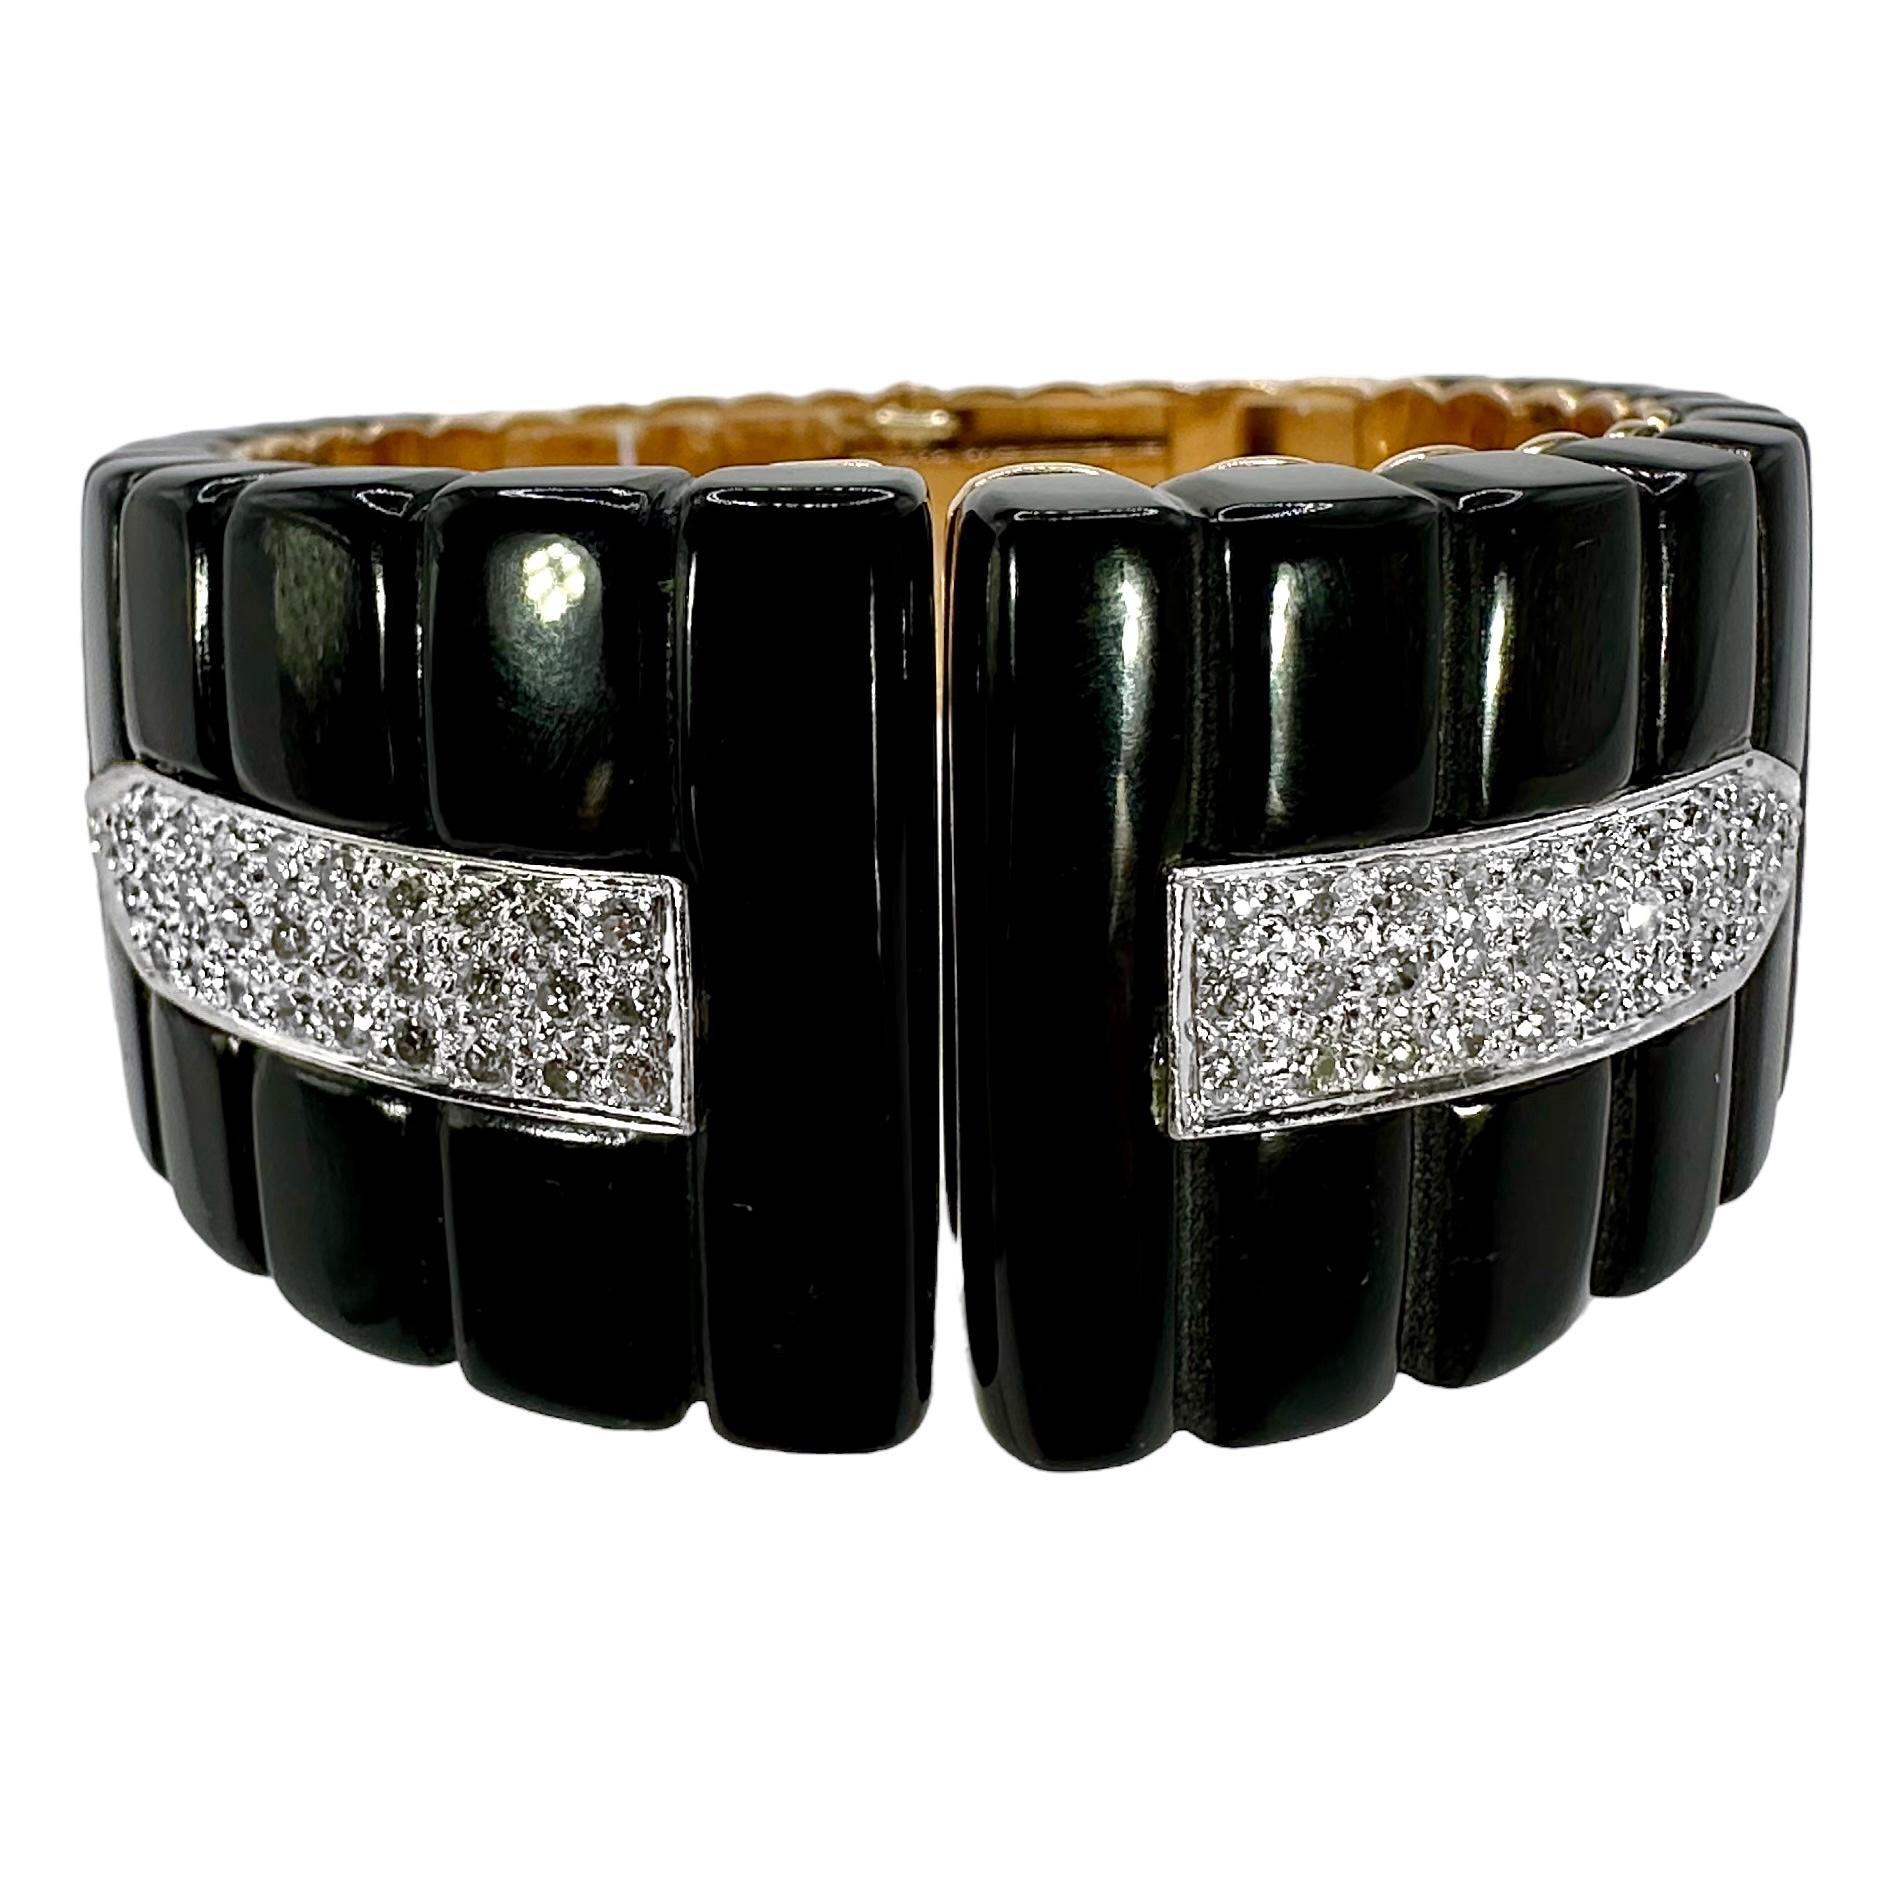 Ce bracelet manchette en or jaune 14k, onyx noir et diamants, taillé sur mesure, élégant et travaillé avec précision, incarne la haute couture et la qualité à tous égards. Tous les travaux d'orfèvrerie sont réalisés selon les normes les plus